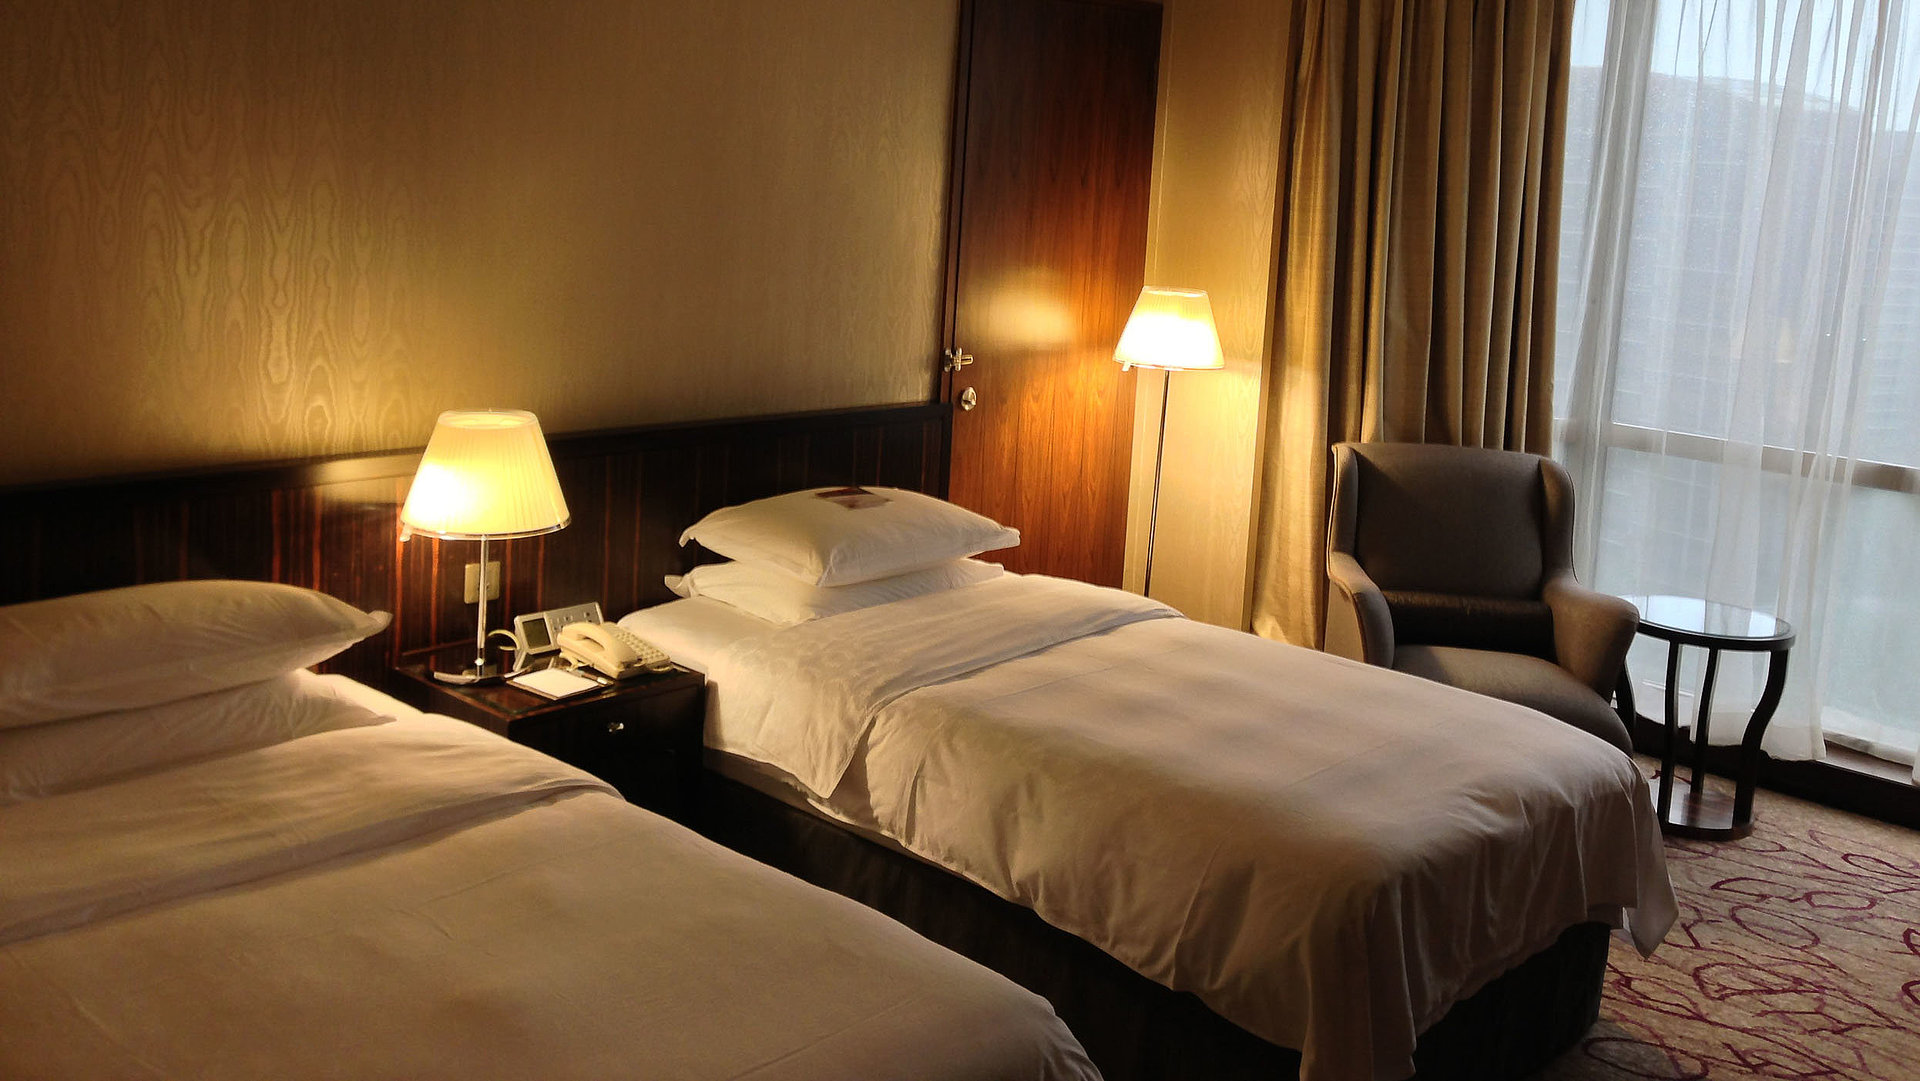 Pauschalangebote für Unterkunft im Oberallgäu - sehr ordentliches Hotelzimmer mit zwei Betten neben beleuchteten Nachtlampen; Zimmer mit weißer Gardine